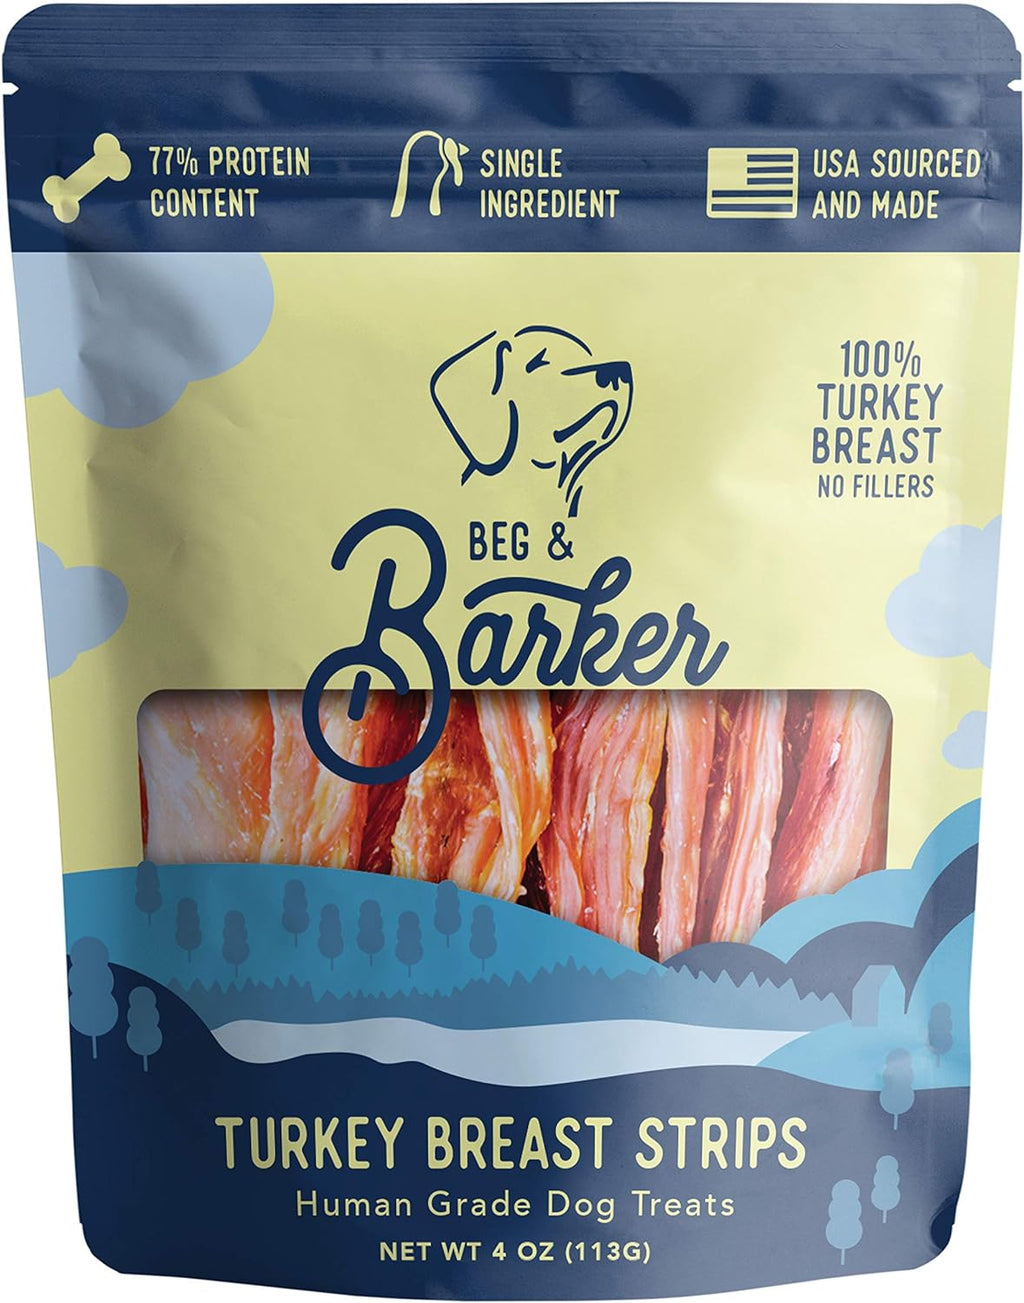 Turkey Jerky Strips Dog Treats, 4oz